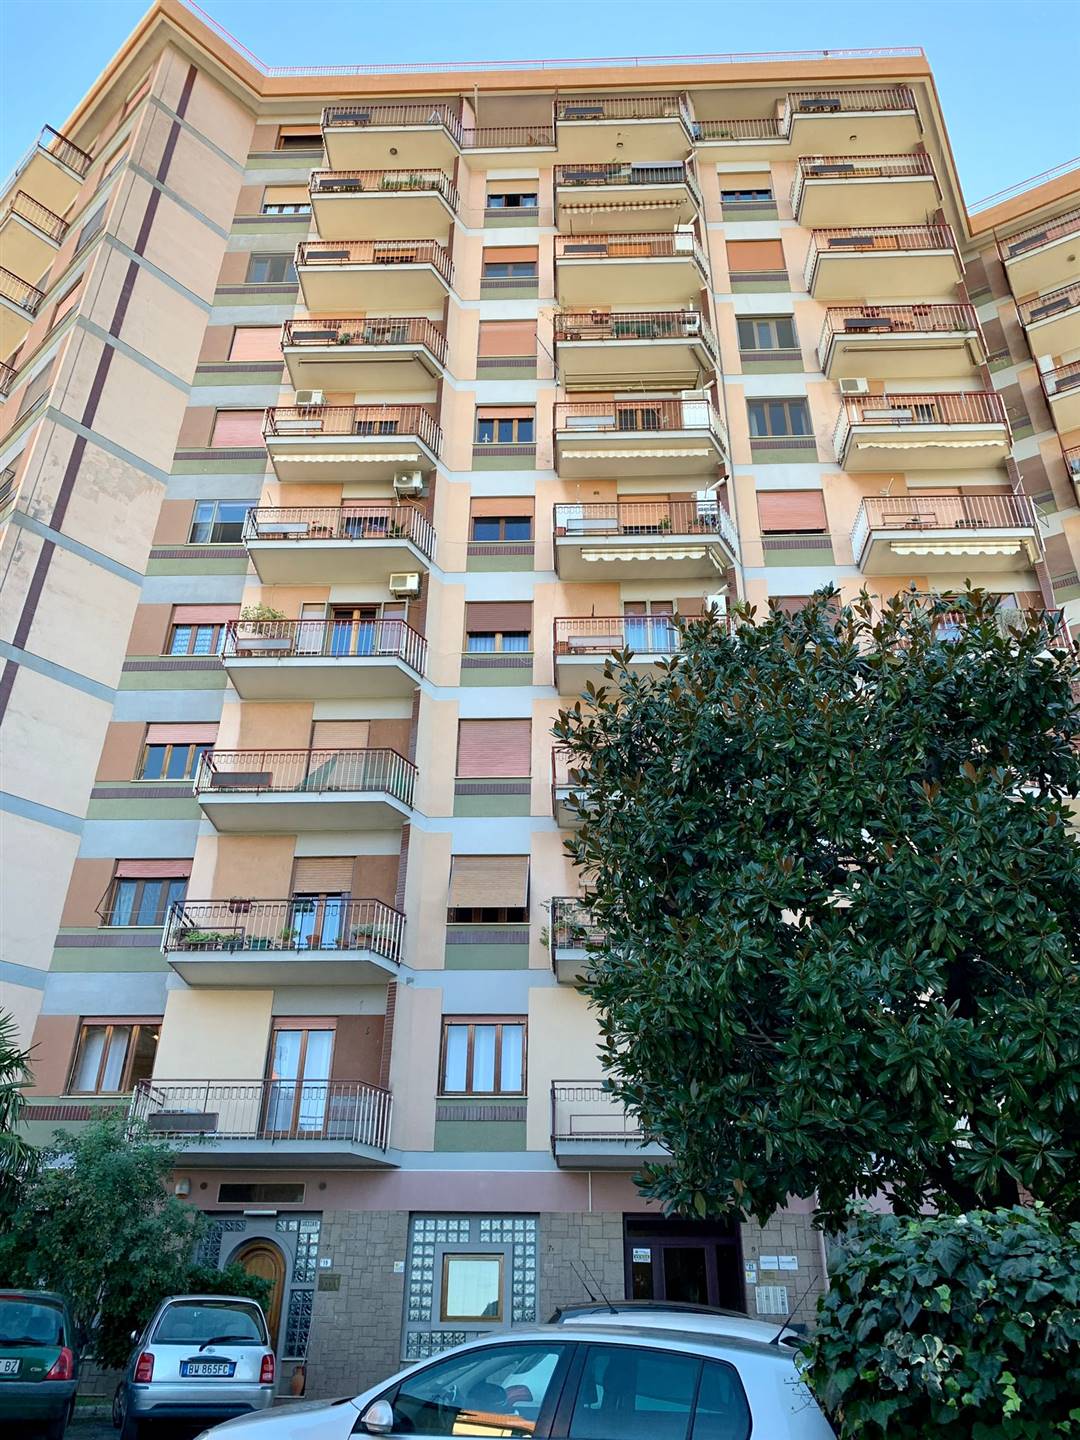 Appartamento in vendita a Frosinone, 6 locali, zona Località: CENTRO ALTO, prezzo € 98.000 | PortaleAgenzieImmobiliari.it